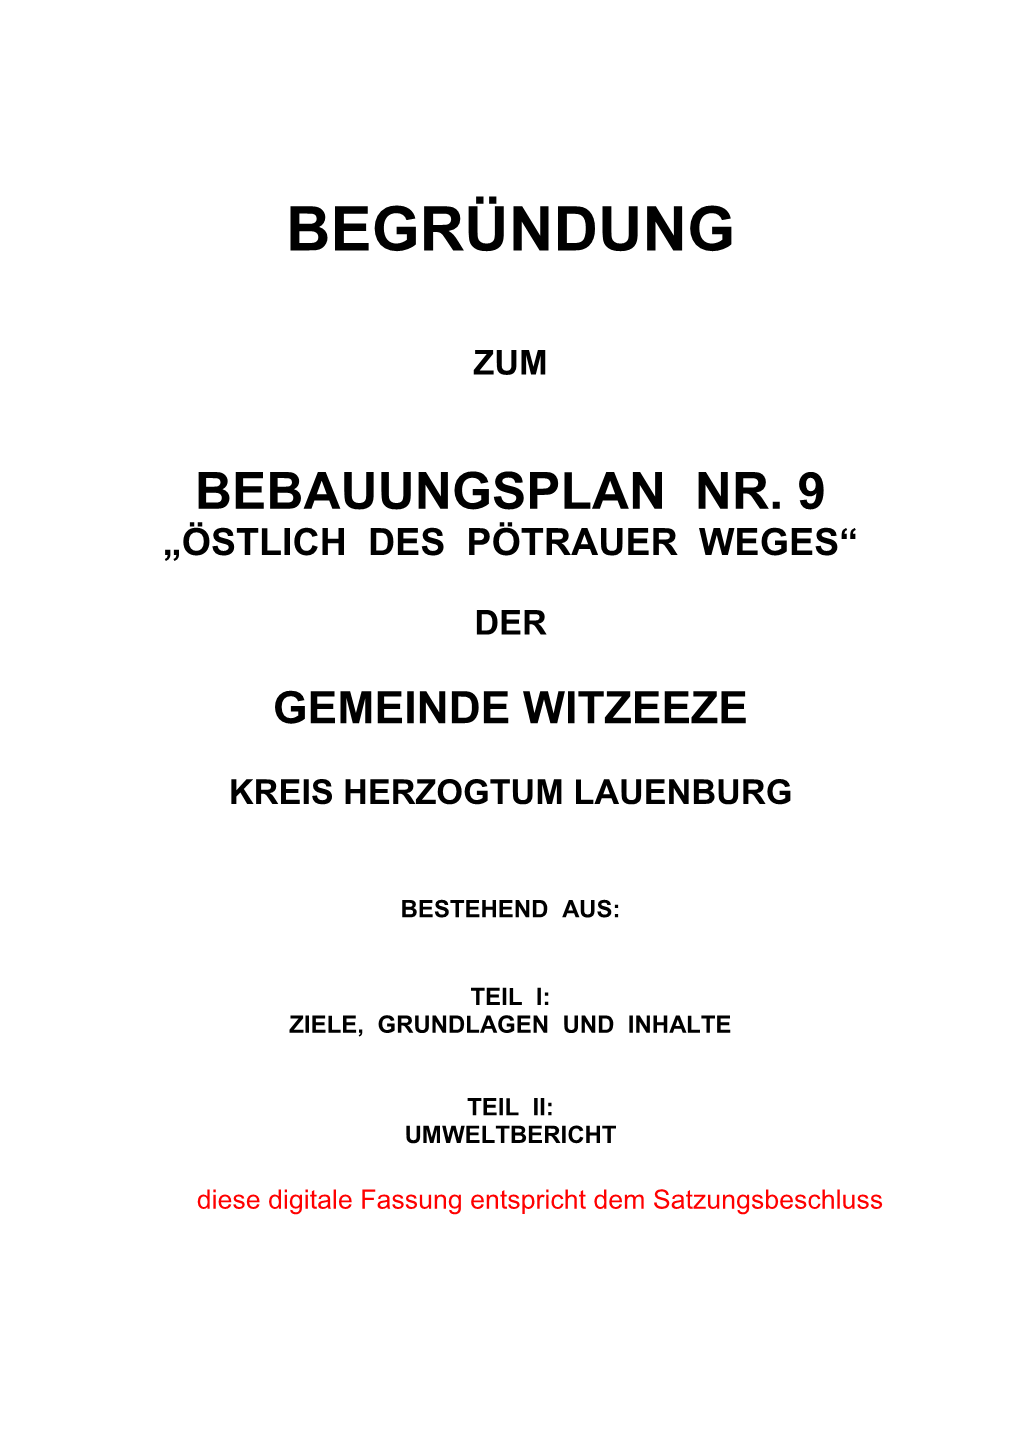 Begründung Zum Bebauungsplan Nr. 9 Der Gemeinde Witzeeze ______